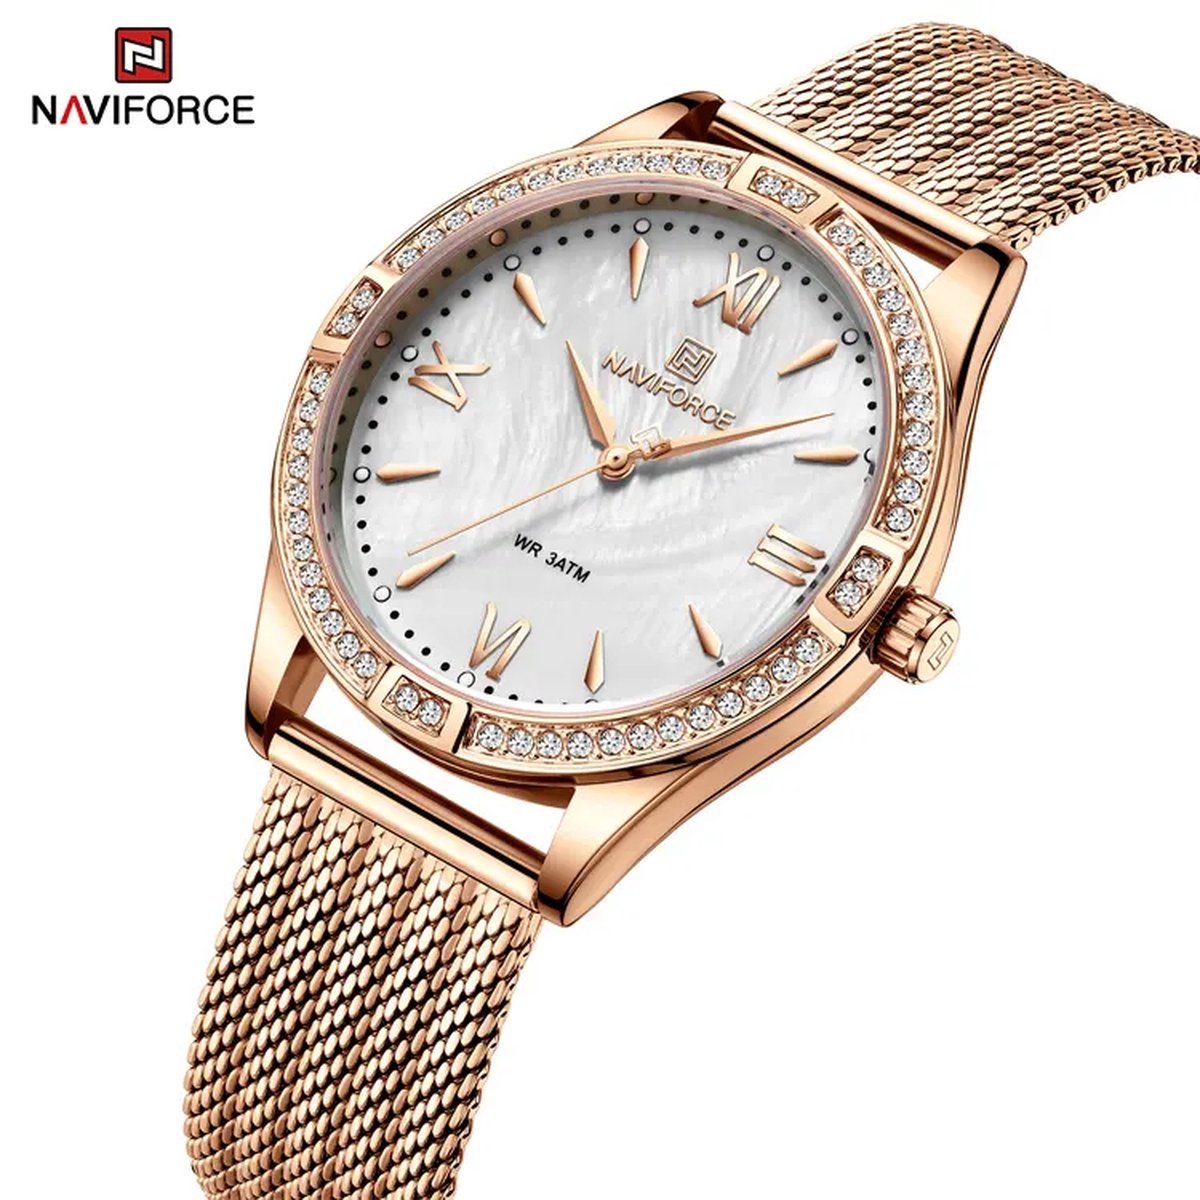 NAVIFORCE horloge met roze gouden stalen polsband, witte wijzerplaat en roze gouden horlogekast voor dames met stijl ( model 5028 RGW )